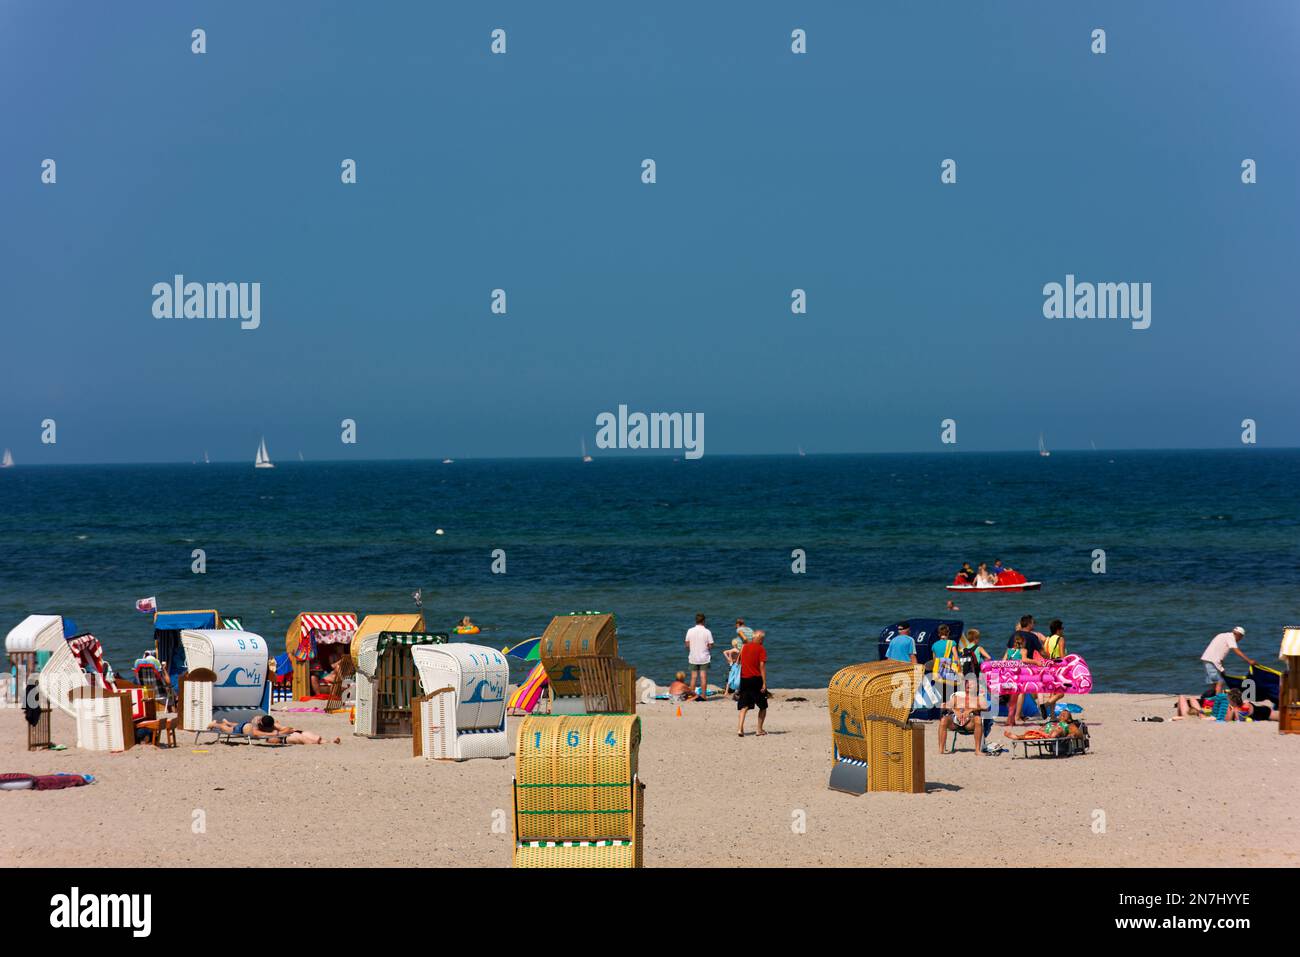 Durante le vacanze estive, le spiagge di Heiligenhafen sono riempite da cestini per il salone della spiaggia, o strandkorb in tedesco. Foto Stock